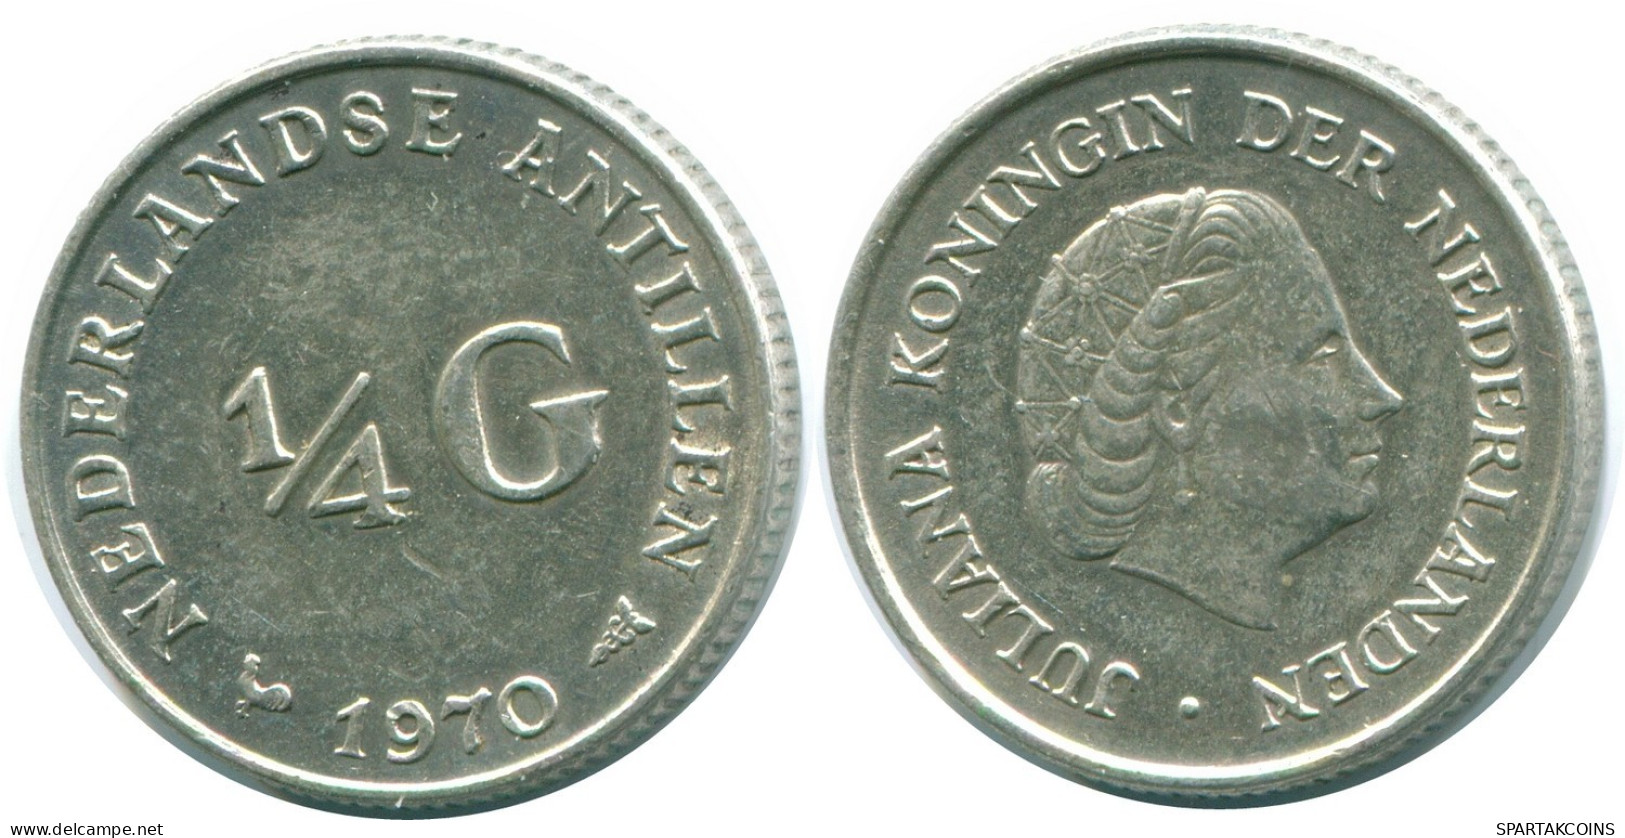 1/4 GULDEN 1970 NIEDERLÄNDISCHE ANTILLEN SILBER Koloniale Münze #NL11632.4.D.A - Niederländische Antillen